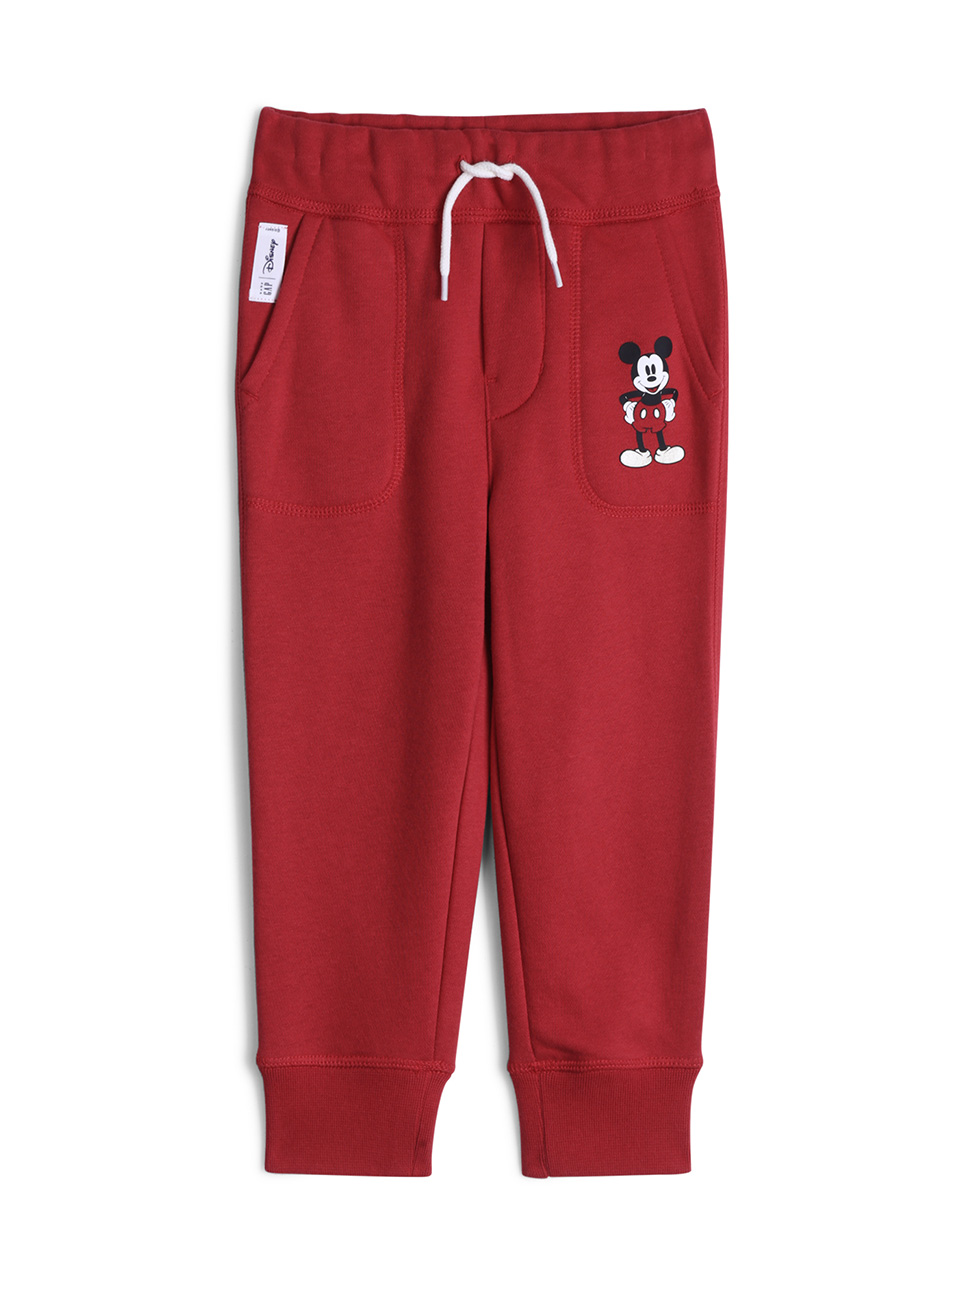 男幼童裝|Gap x Disney迪士尼聯名 米奇保暖刷毛鬆緊棉褲-摩登紅色